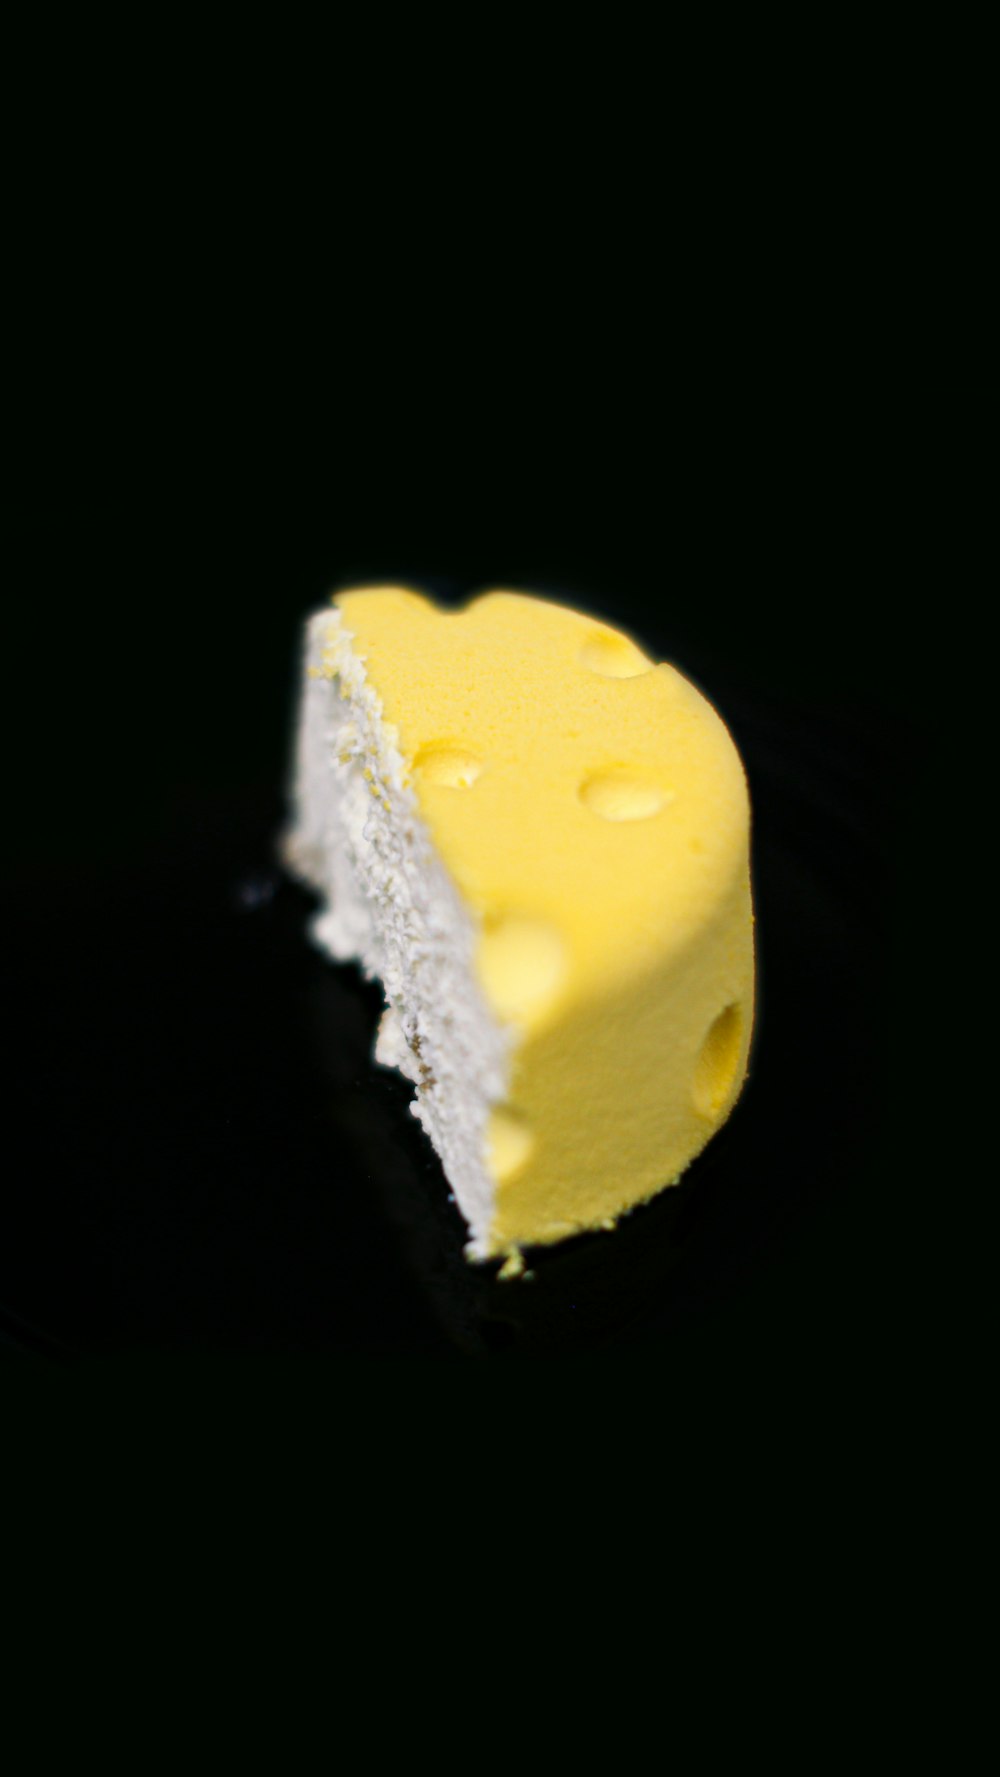 gâteau jaune et blanc sur surface noire